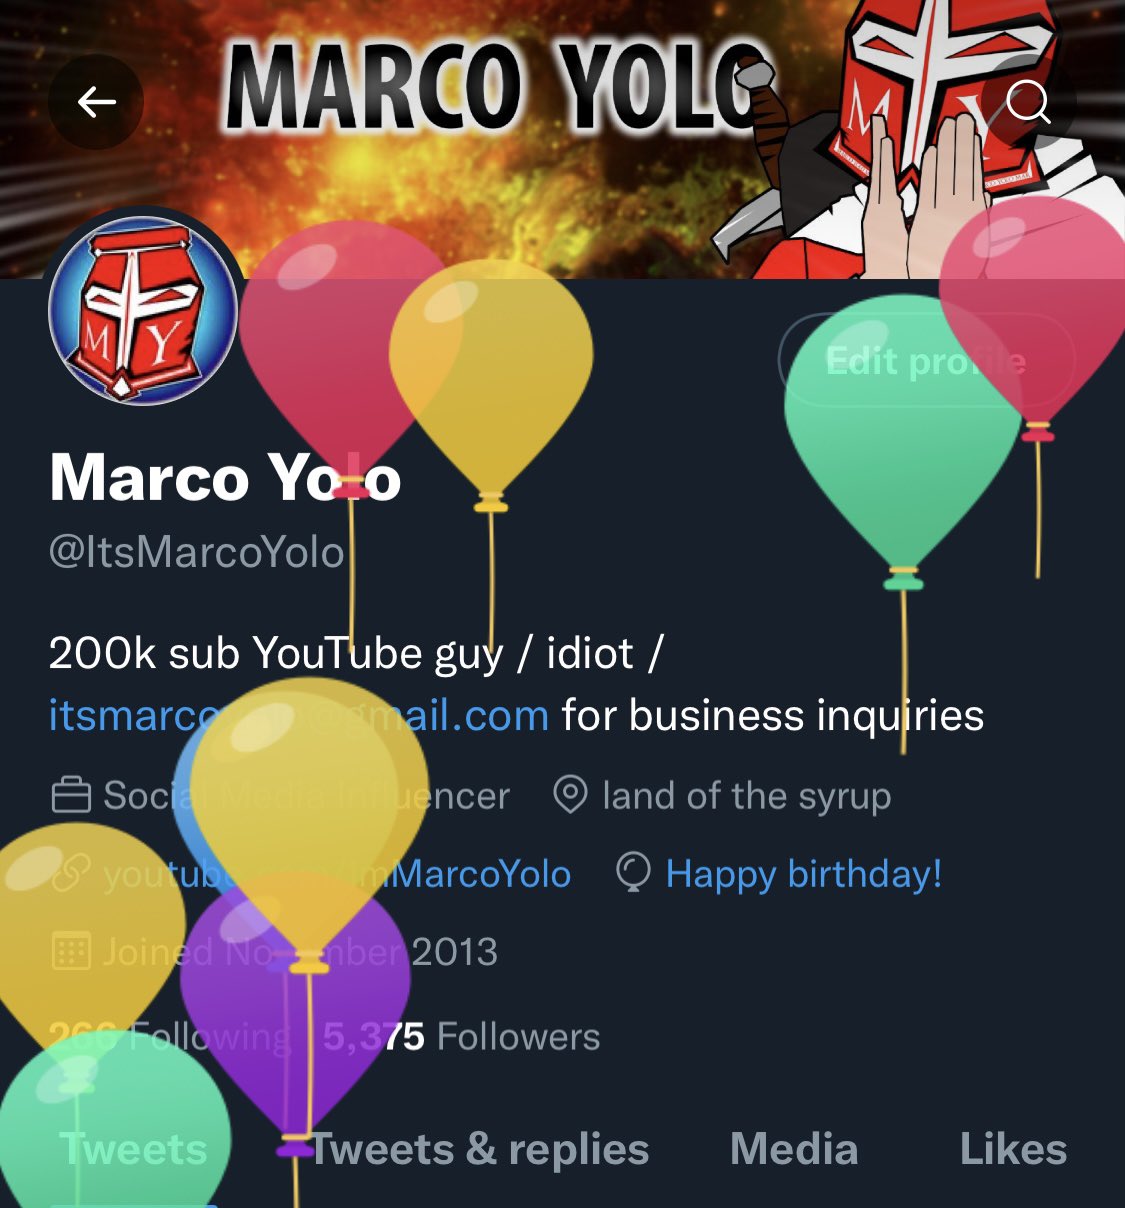 Marco Yolo (@ItsMarcoYolo) / Twitter